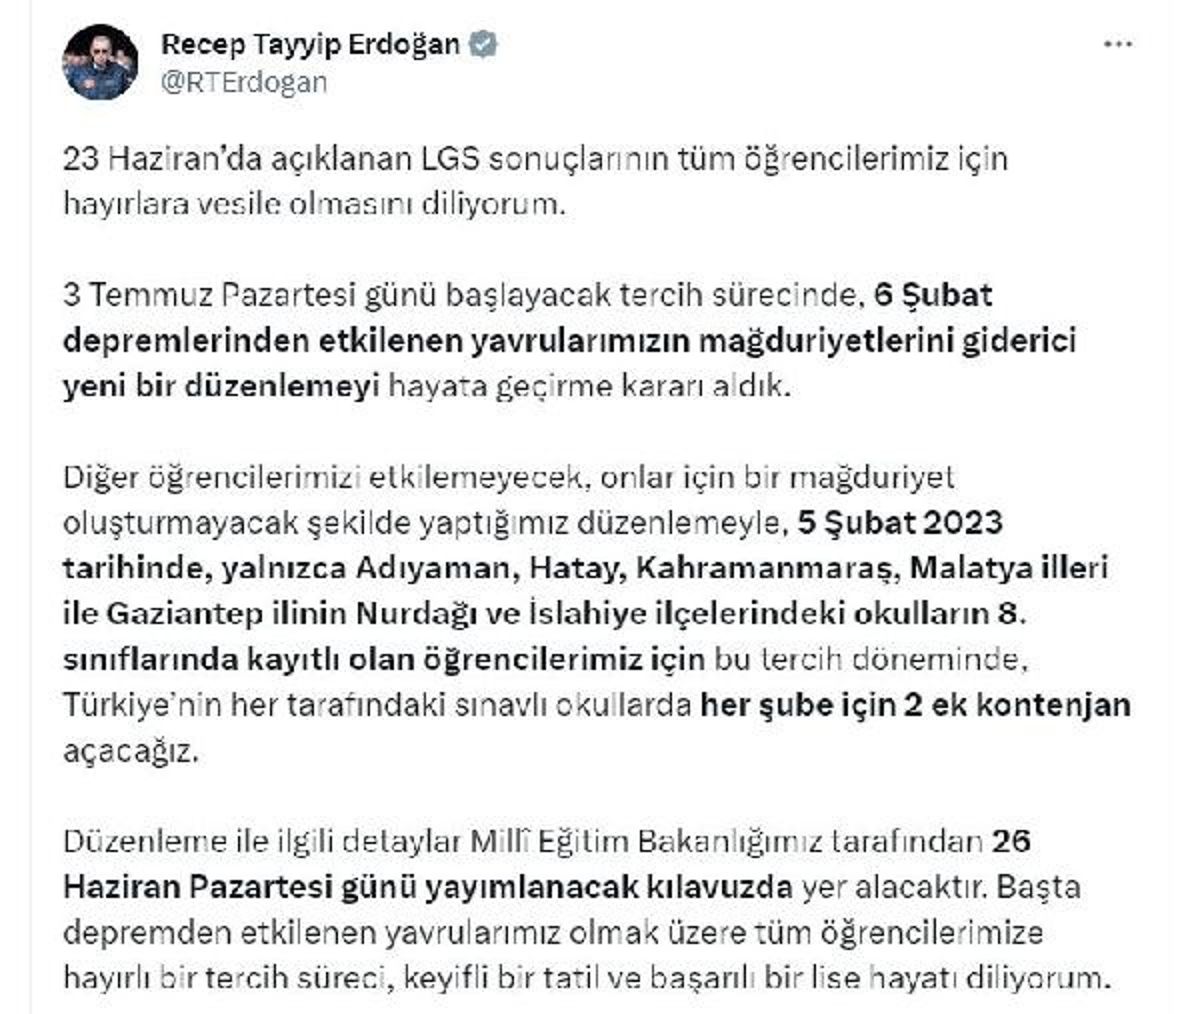 Cumhurbaşkanı Erdoğan, 5 Şubat 2023'te Adıyaman, Hatay, Kahramanmaraş, Malatya ve Gaziantep'teki öğrenciler için ek kontenjan açılacağını duyurdu